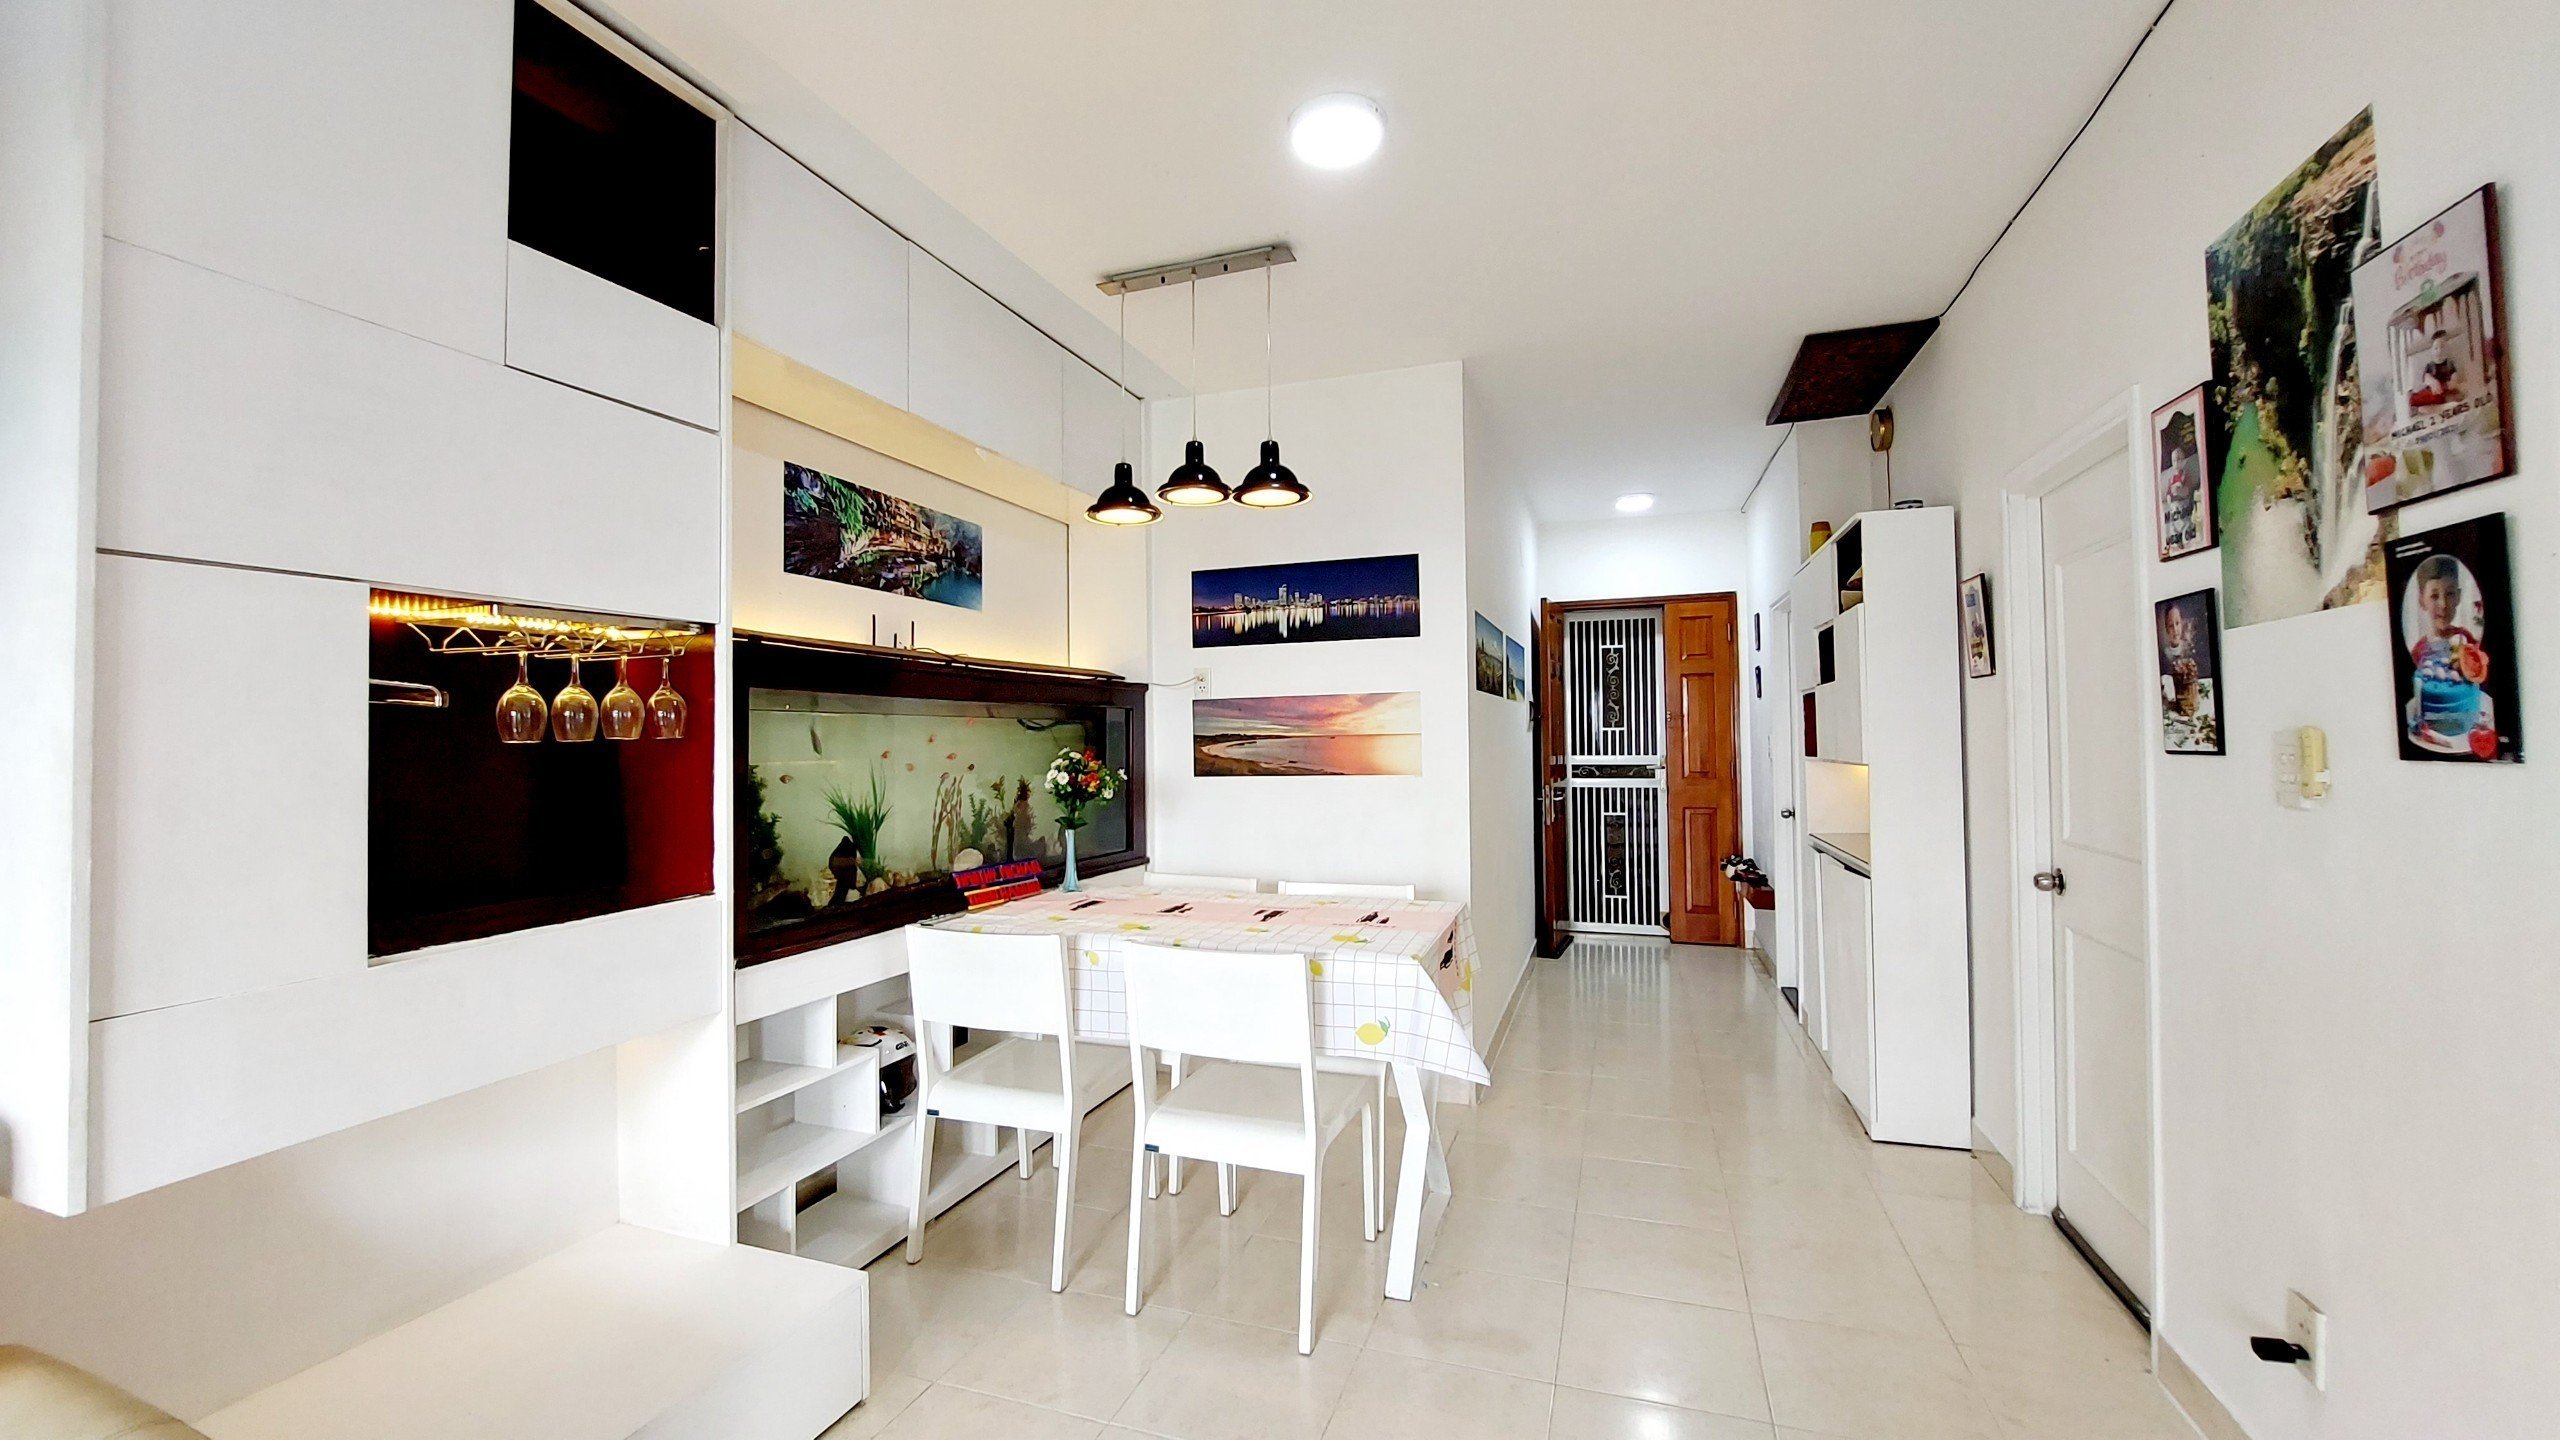 Cần bán gấp căn hộ Conic Đông Nam Á, 74m2. 2pn, 2 ban công, 2toilet,  full nội thất đẹp.